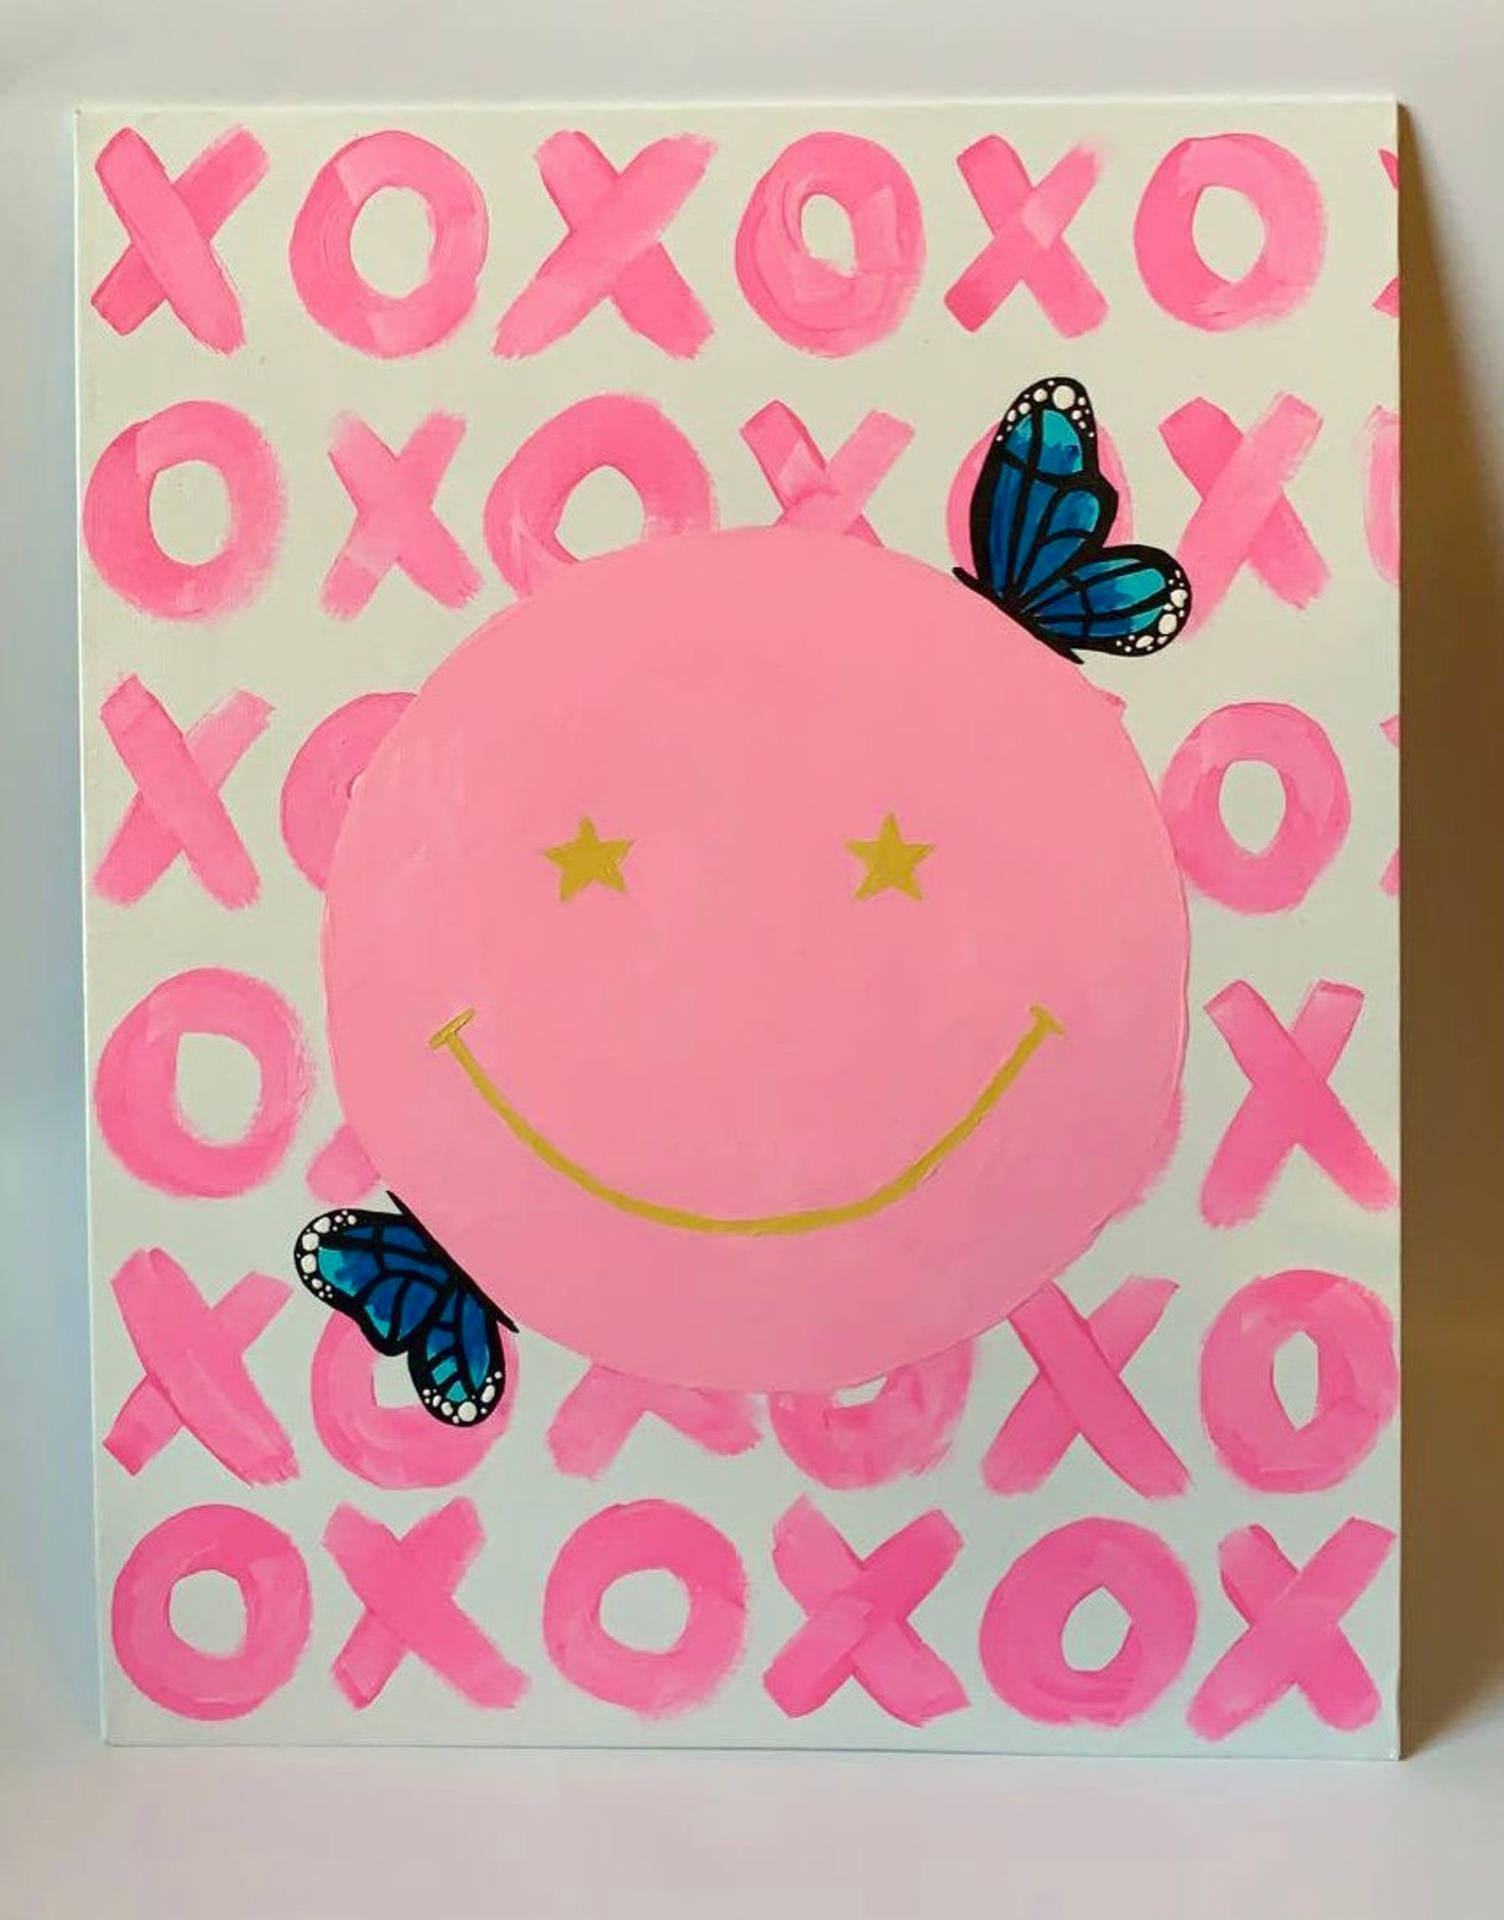 Preppy Smiley Face Rosa Xoxo Wallpaper